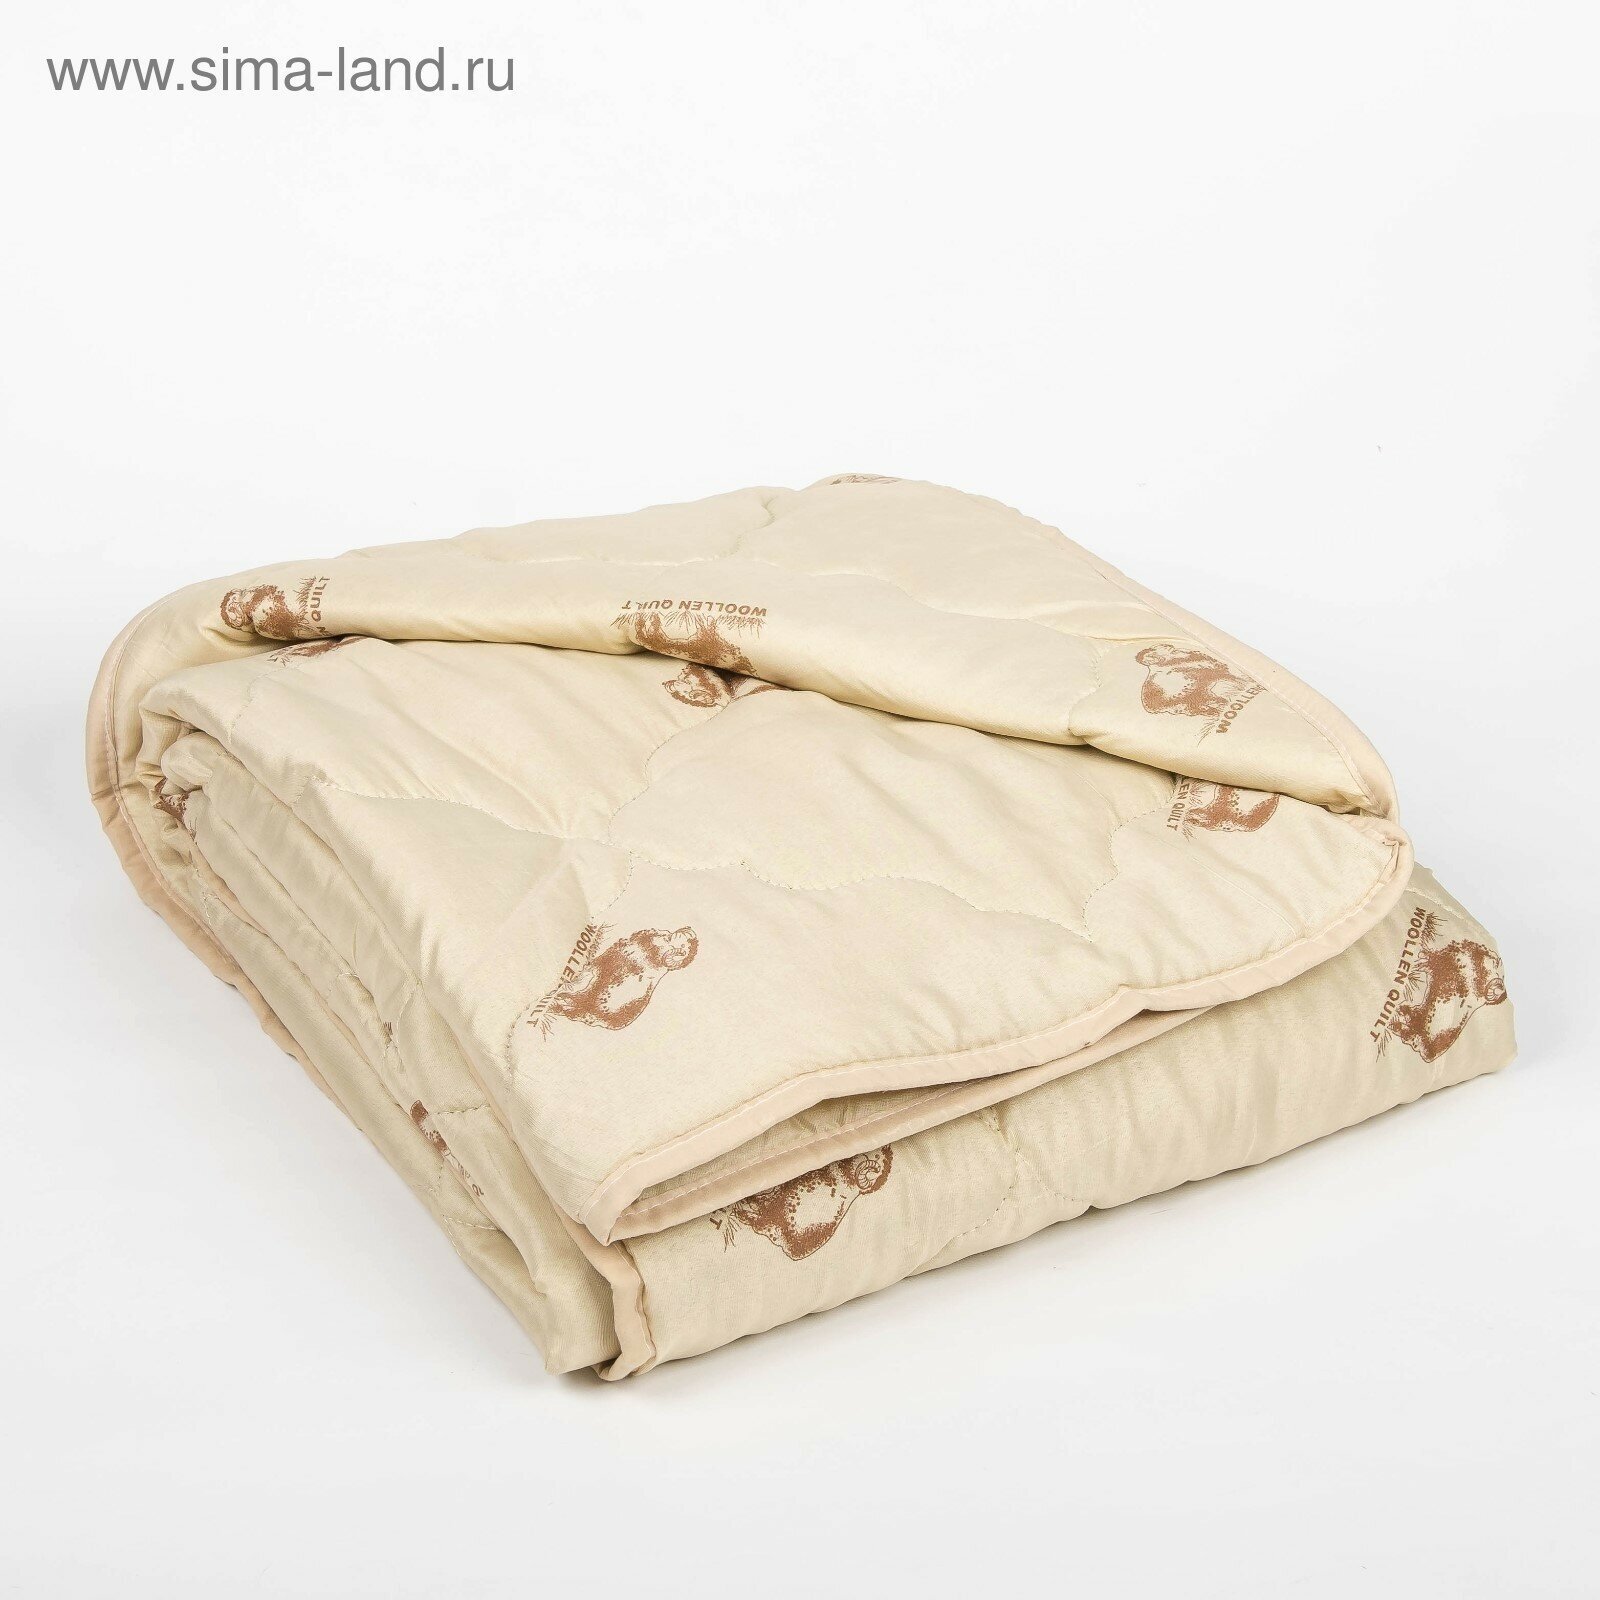 Одеяло облегчённое "Овечья шерсть", размер 140х205 ± 5 см, 200гр/м2, чехол п/э